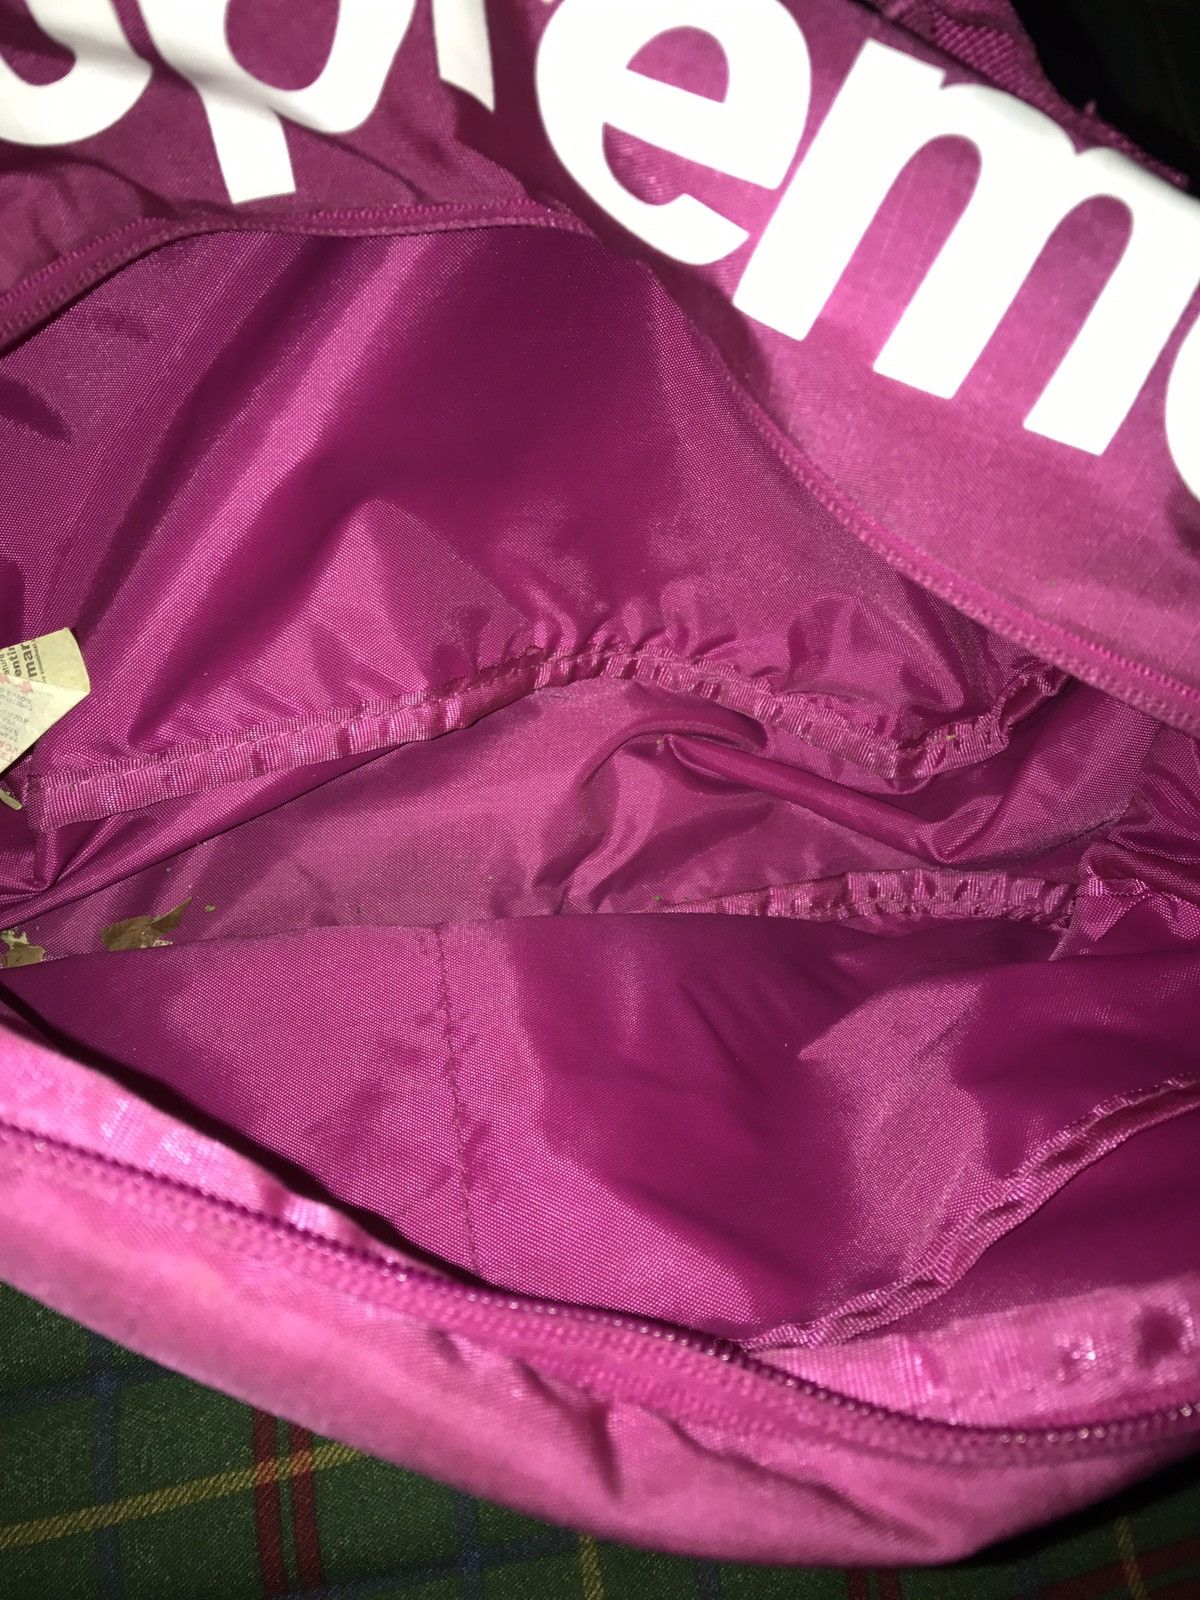 Supreme Supreme Magenta Pink Backpack Bag SS17